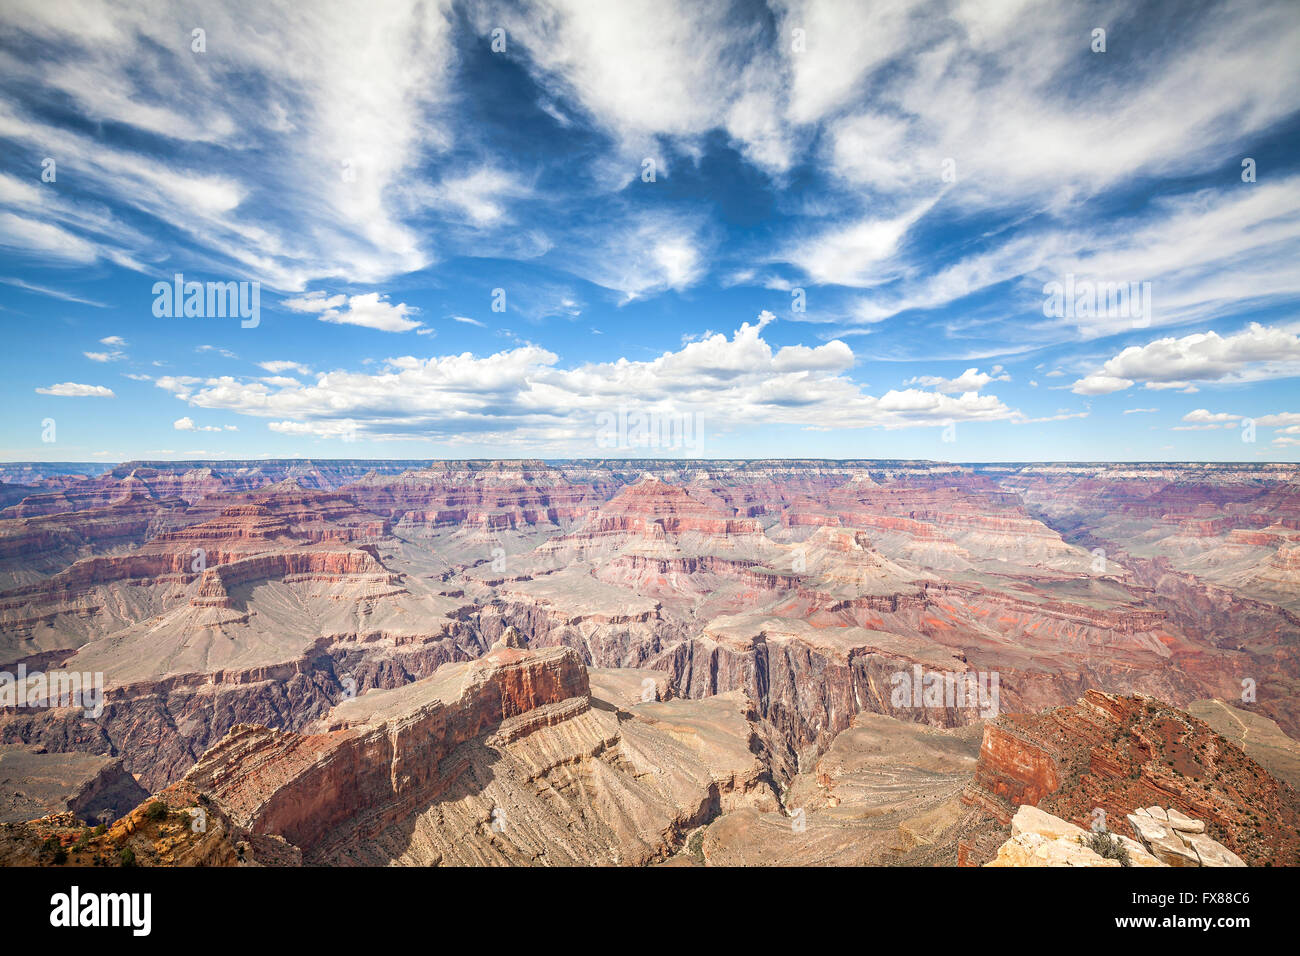 Rive Sud du Grand Canyon National Park, l'une des meilleures destinations touristiques aux Etats-Unis. Banque D'Images